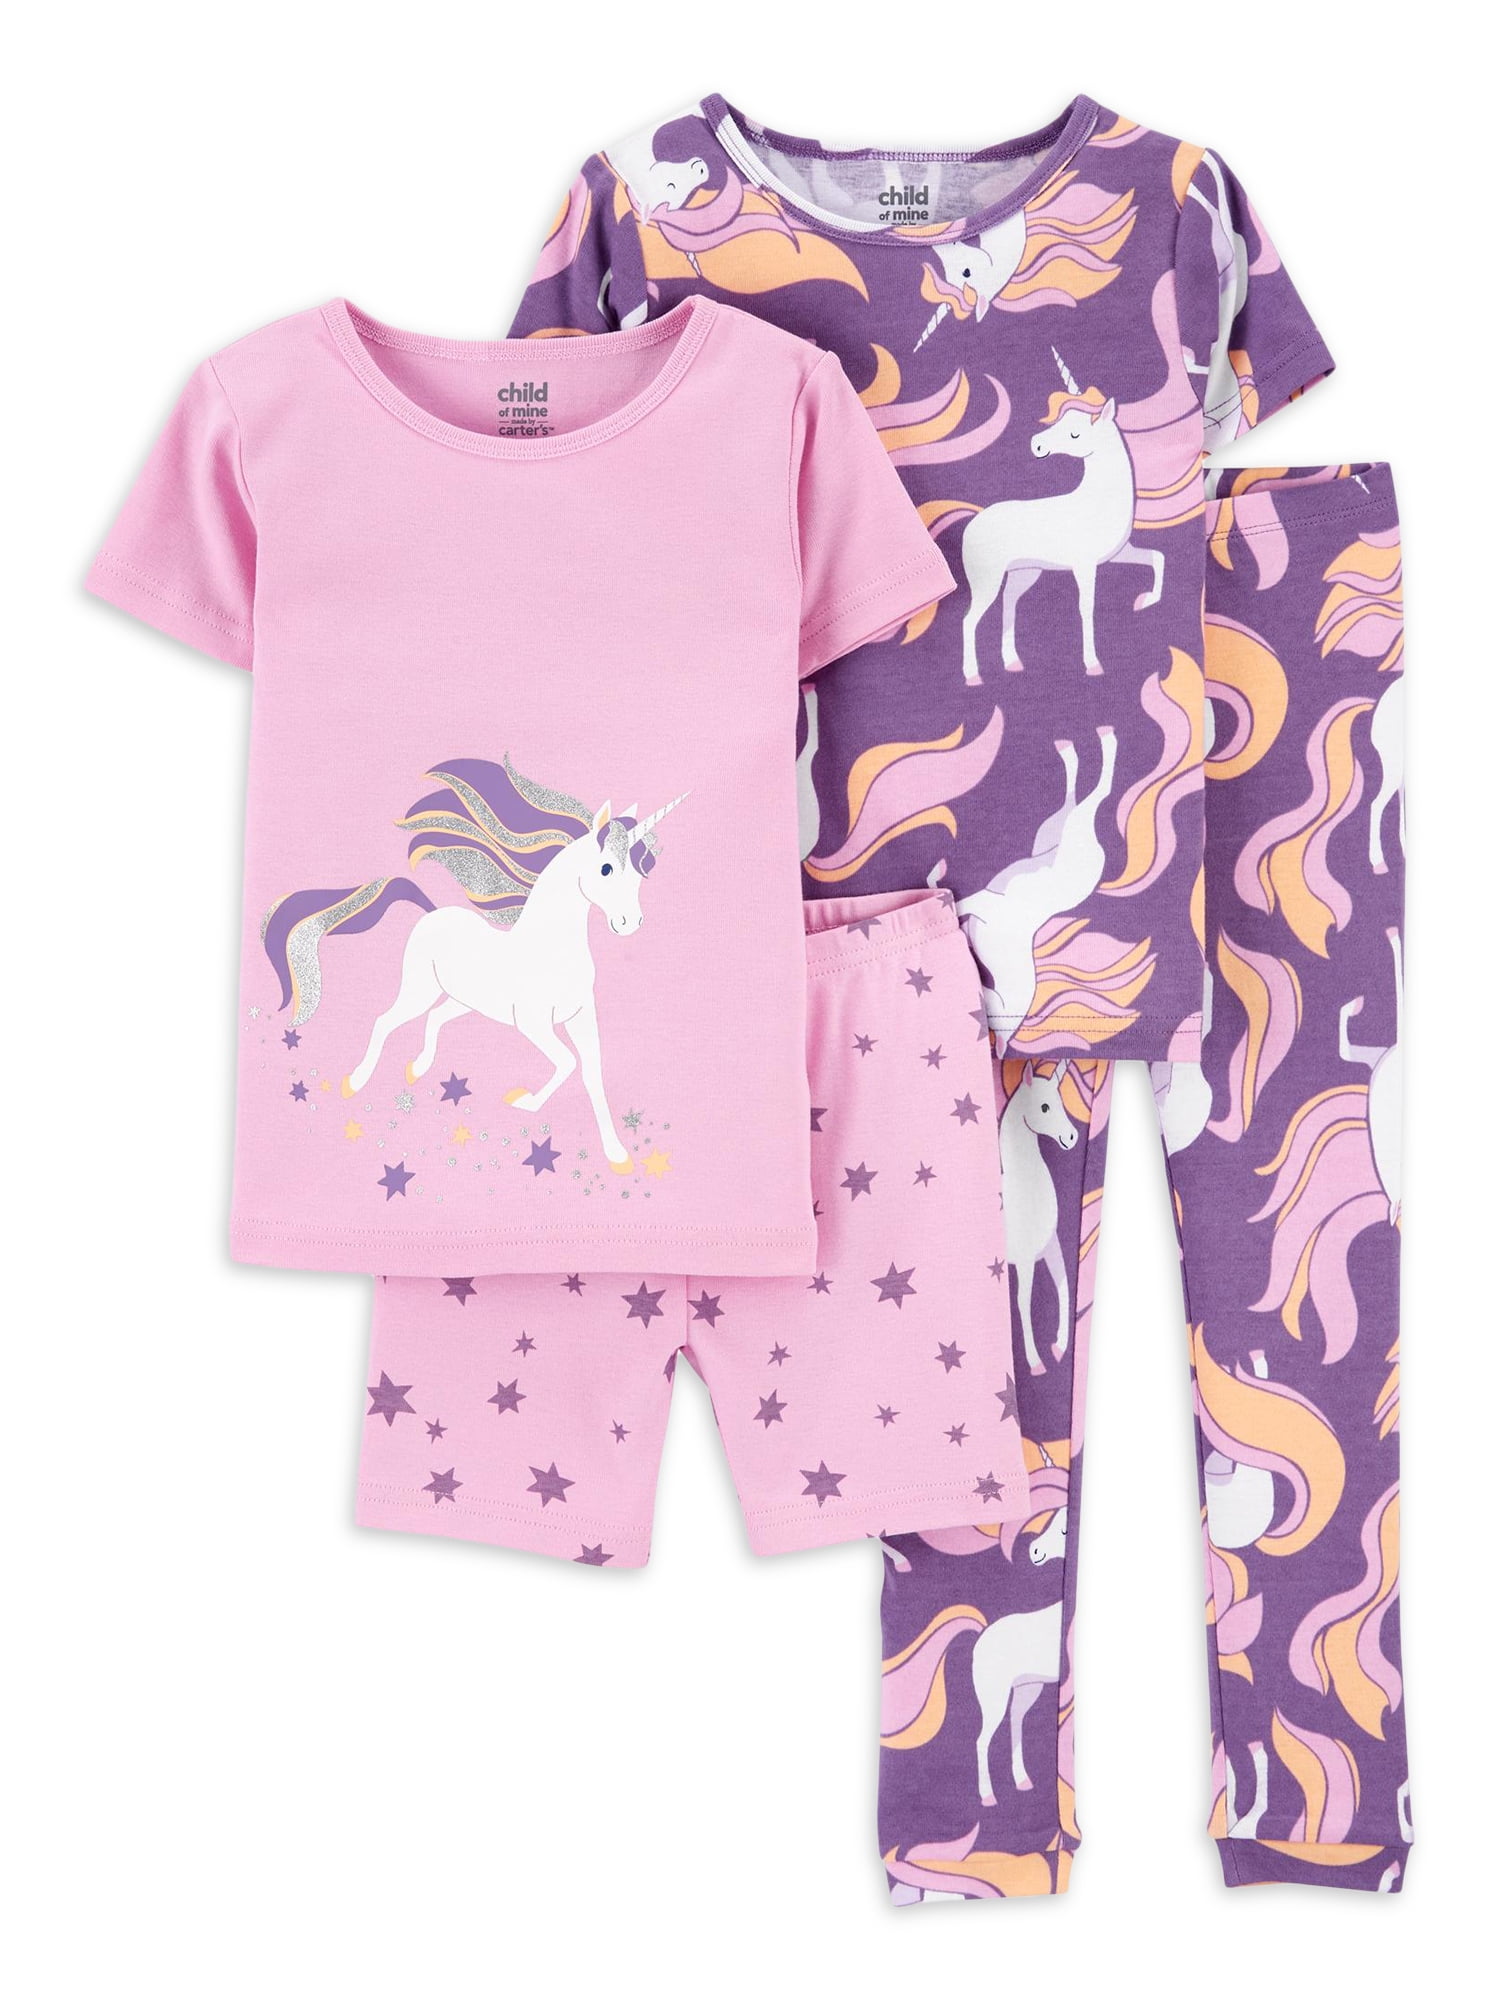 New Carters Little Girls Unicorn Shirt & Fleece Pajama Pants Set 6 7 8 